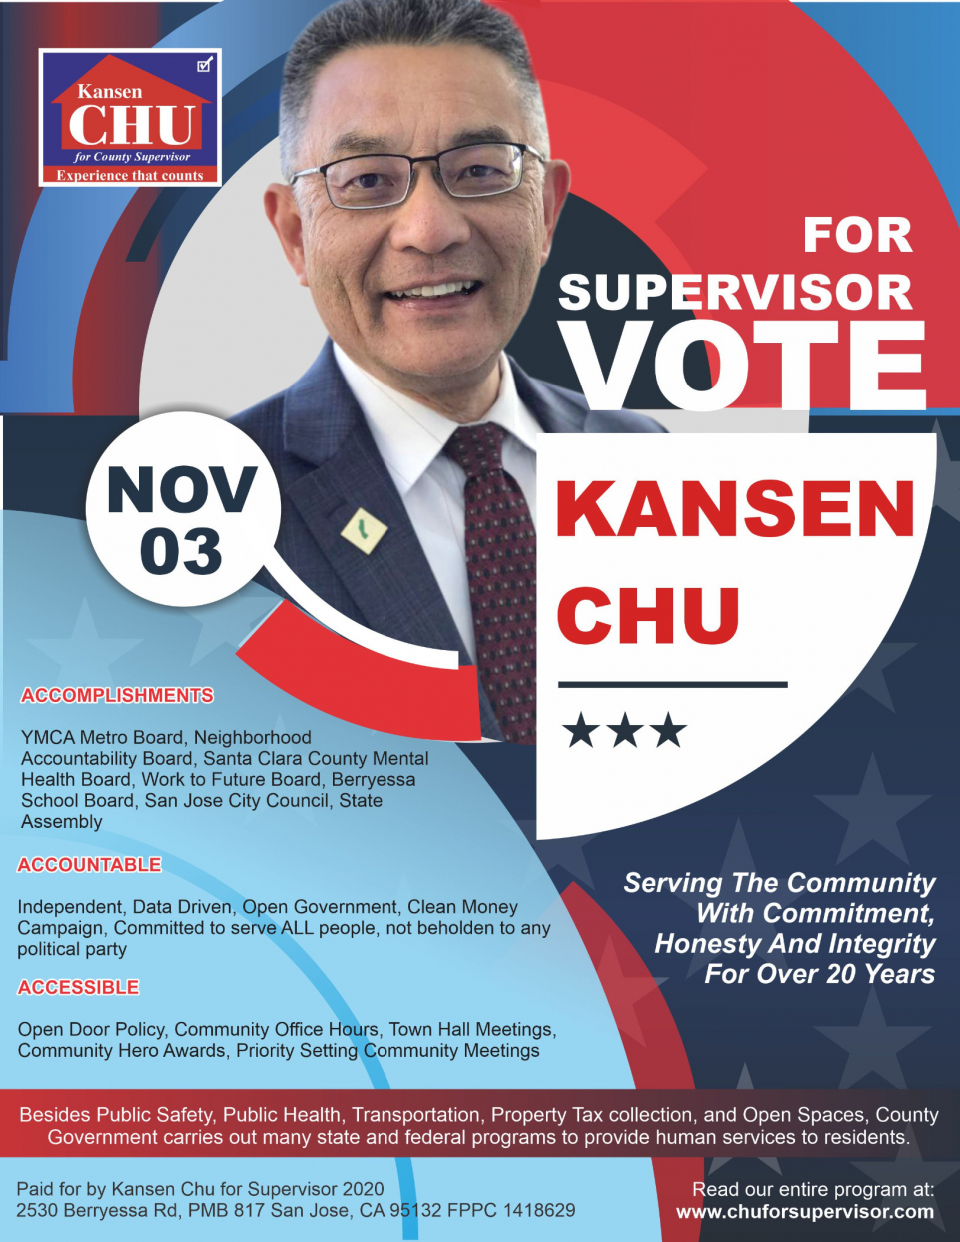 VOTE FOR KANSEN CHU FOR SUPERVISOR ON NOVEMBER, 3, 2020